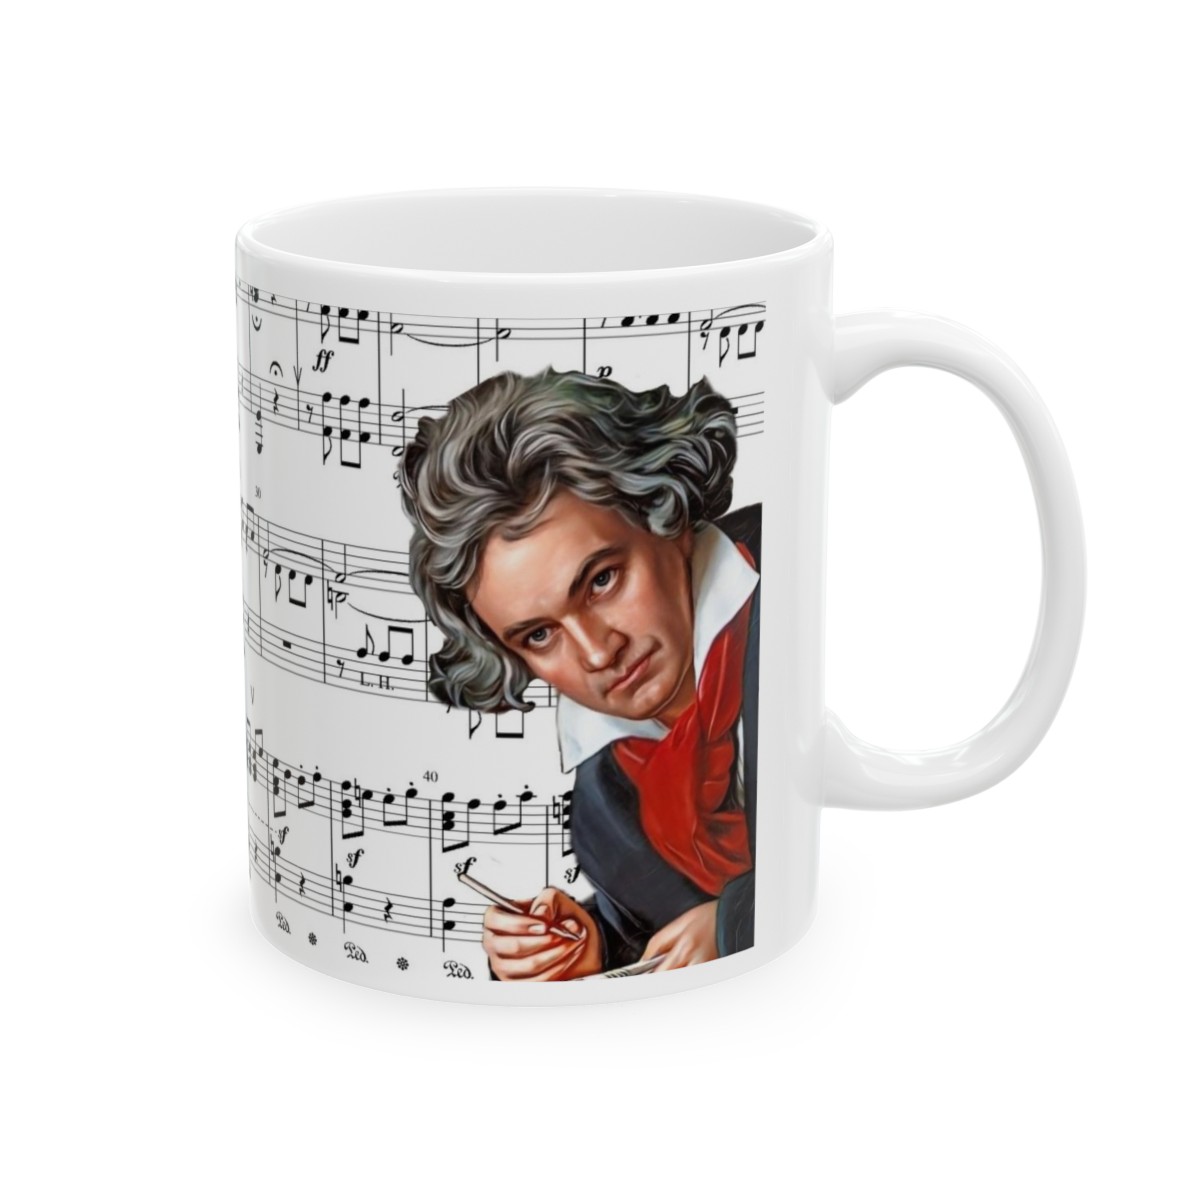 "I'm Composed Around My 5th" Beethoven Sheet Music Ceramic Mug 11oz product thumbnail image